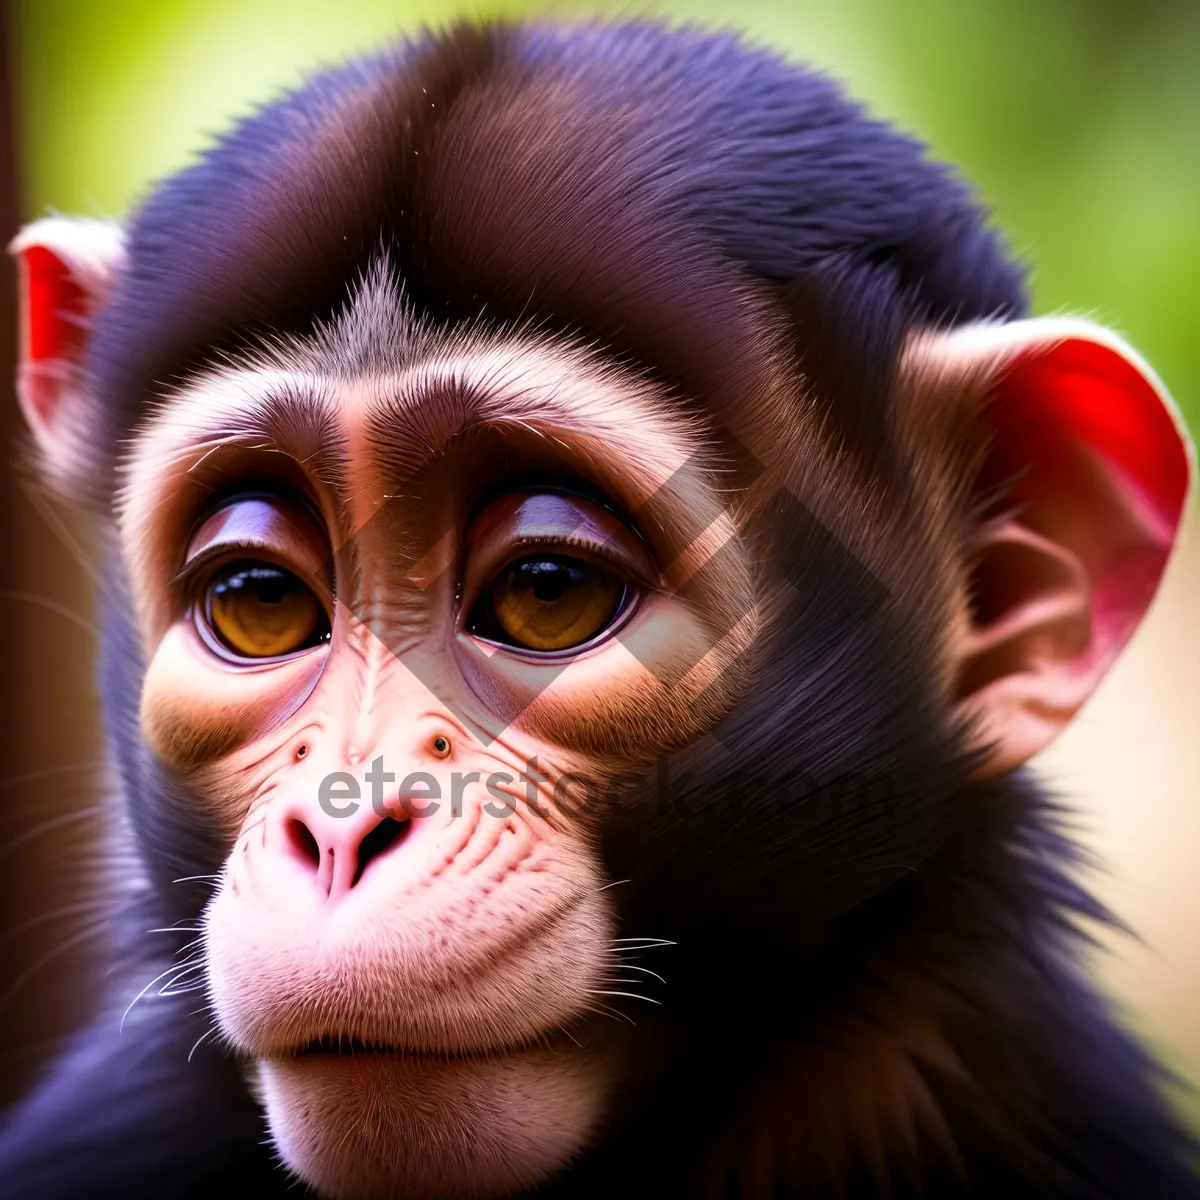 Picture of Cute Orangutan Portrait in the Jungle